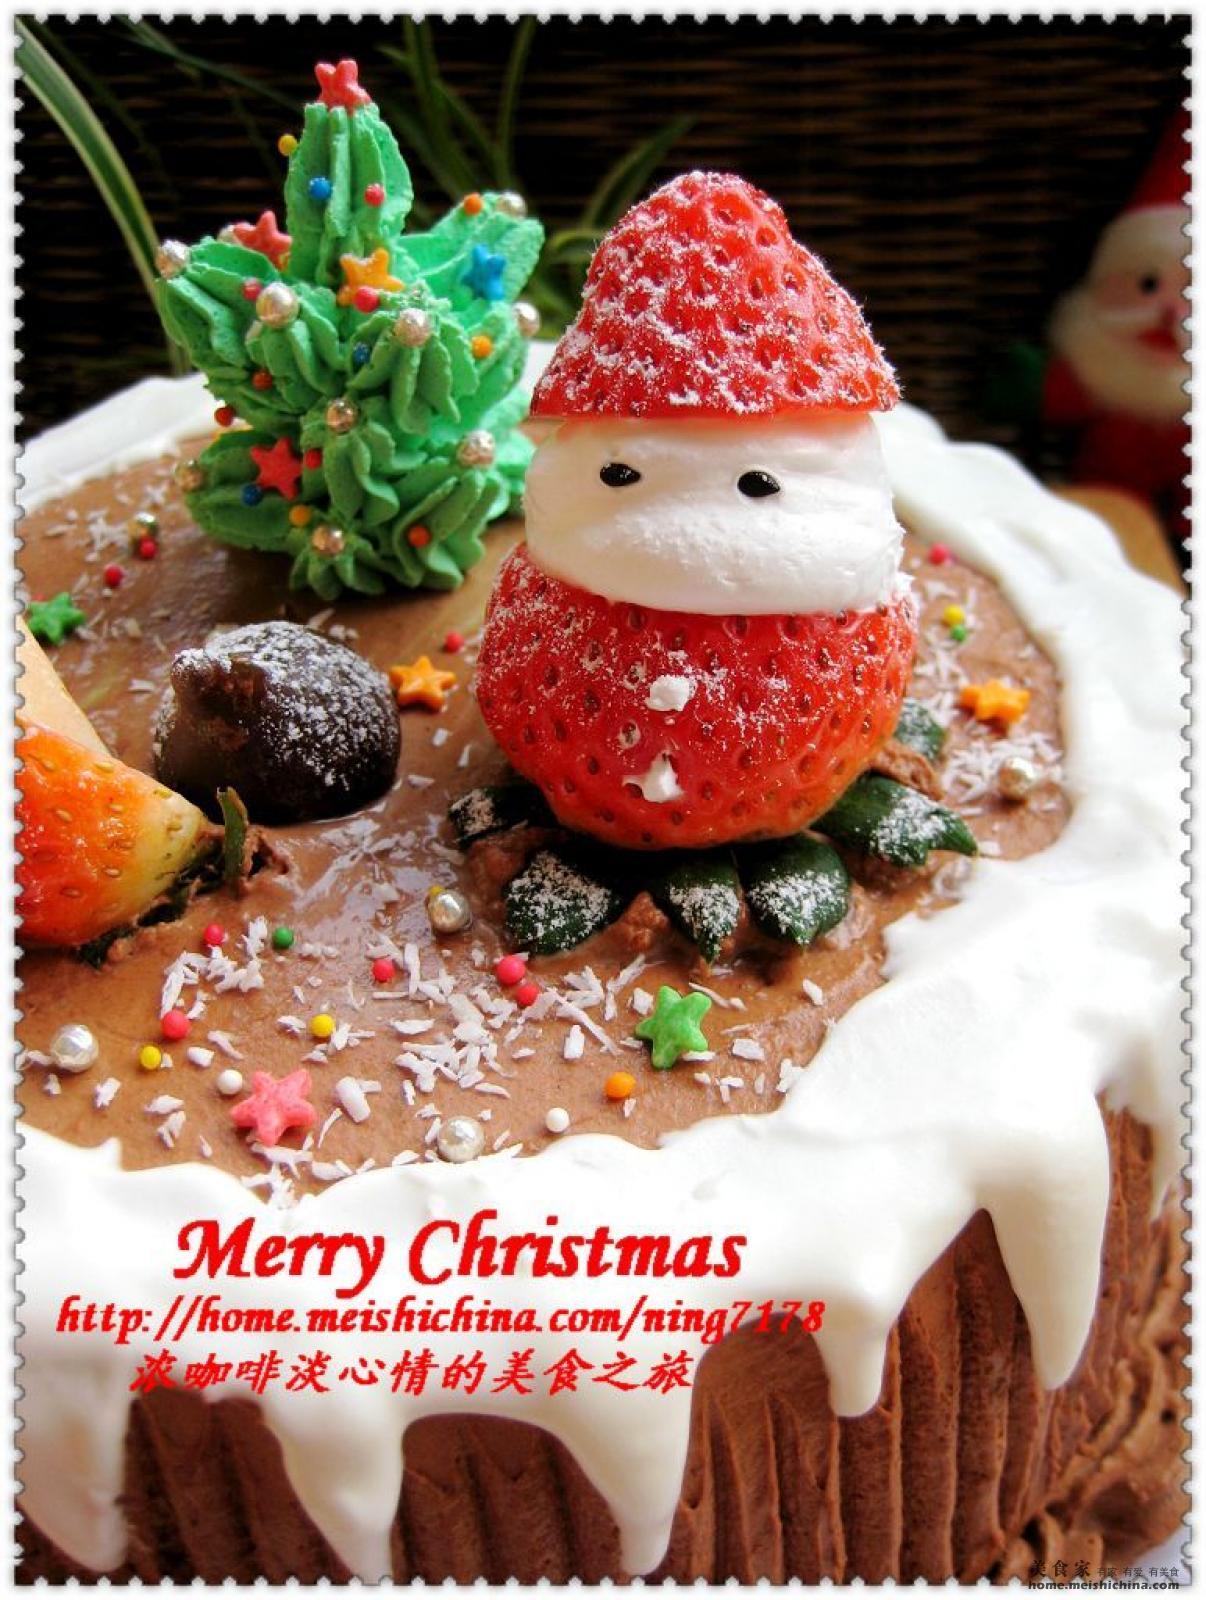 圣诞节杯子蛋糕 库存照片. 图片 包括有 红色, 诺埃尔, 结霜, 装饰品, 霍莉, 杯子, 杯形蛋糕, 抗菌 - 35878664